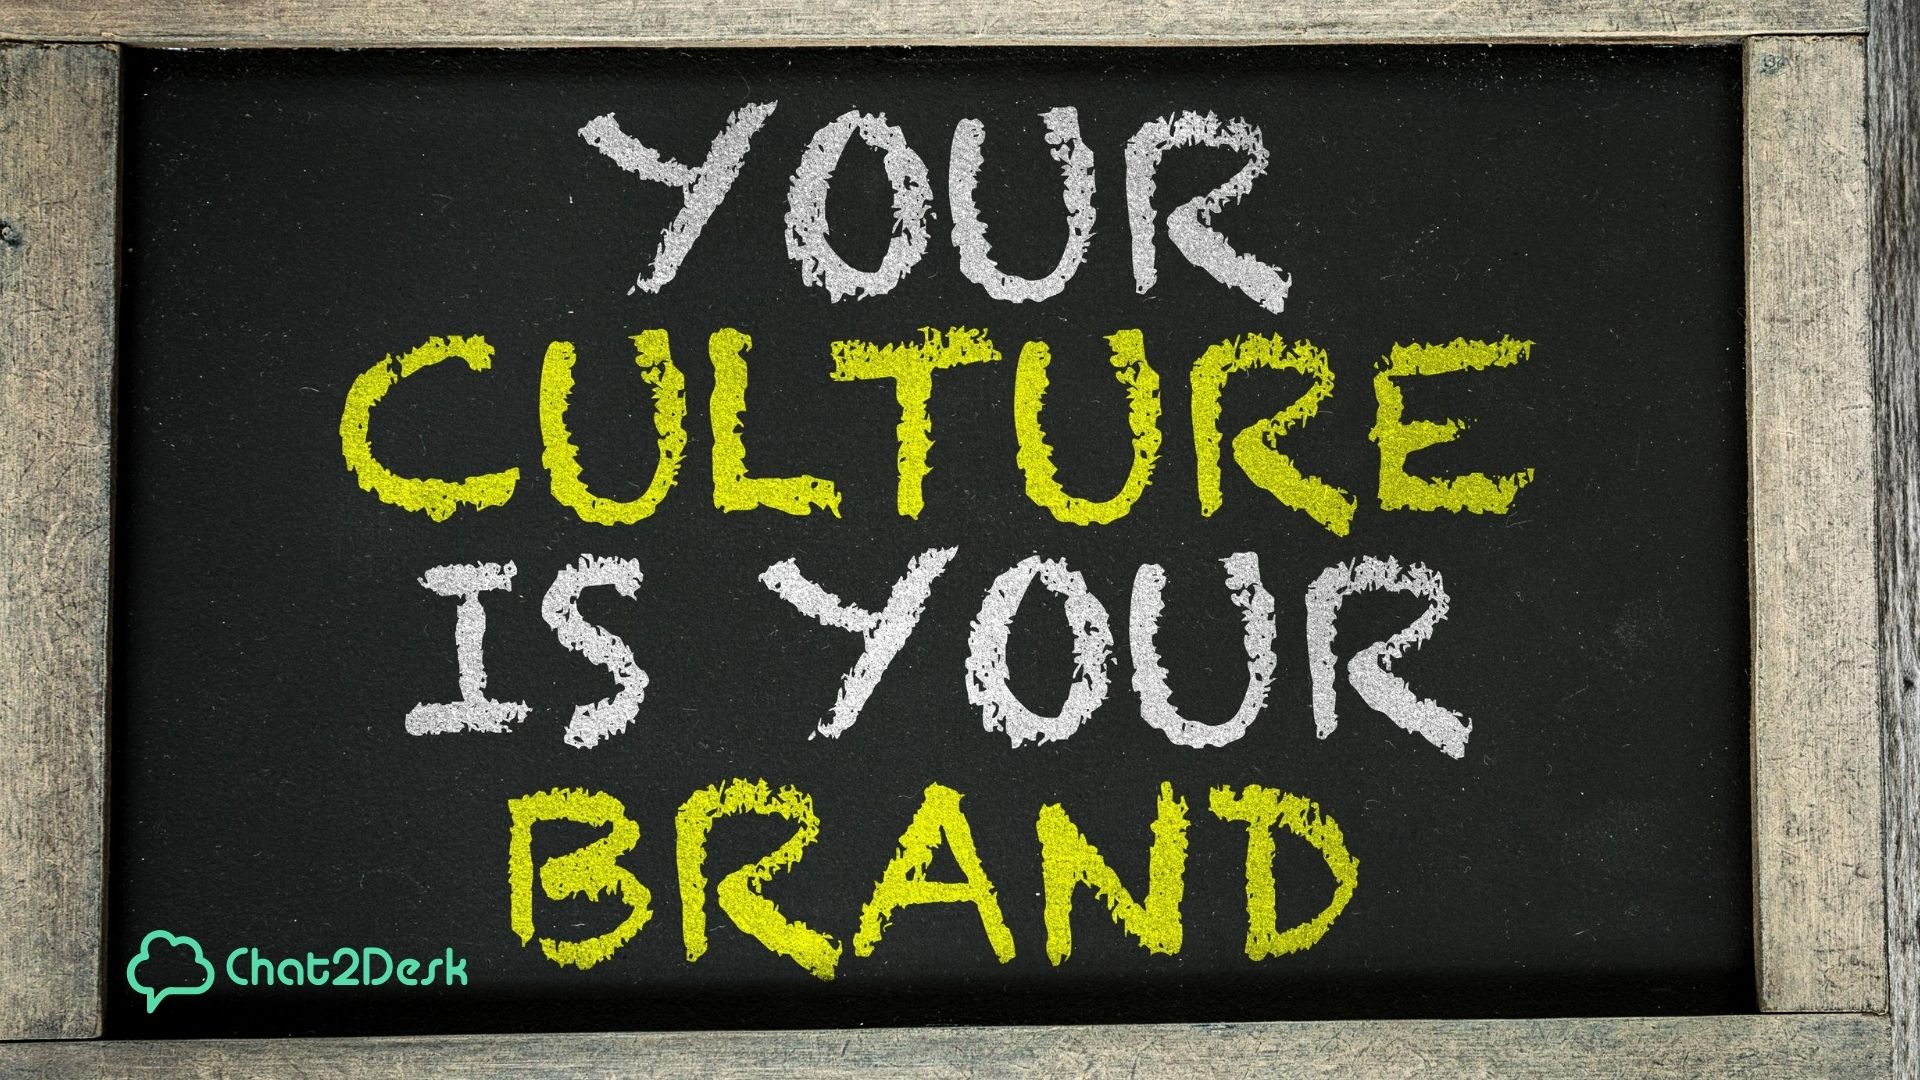 Cultura organizacional é a sua marca